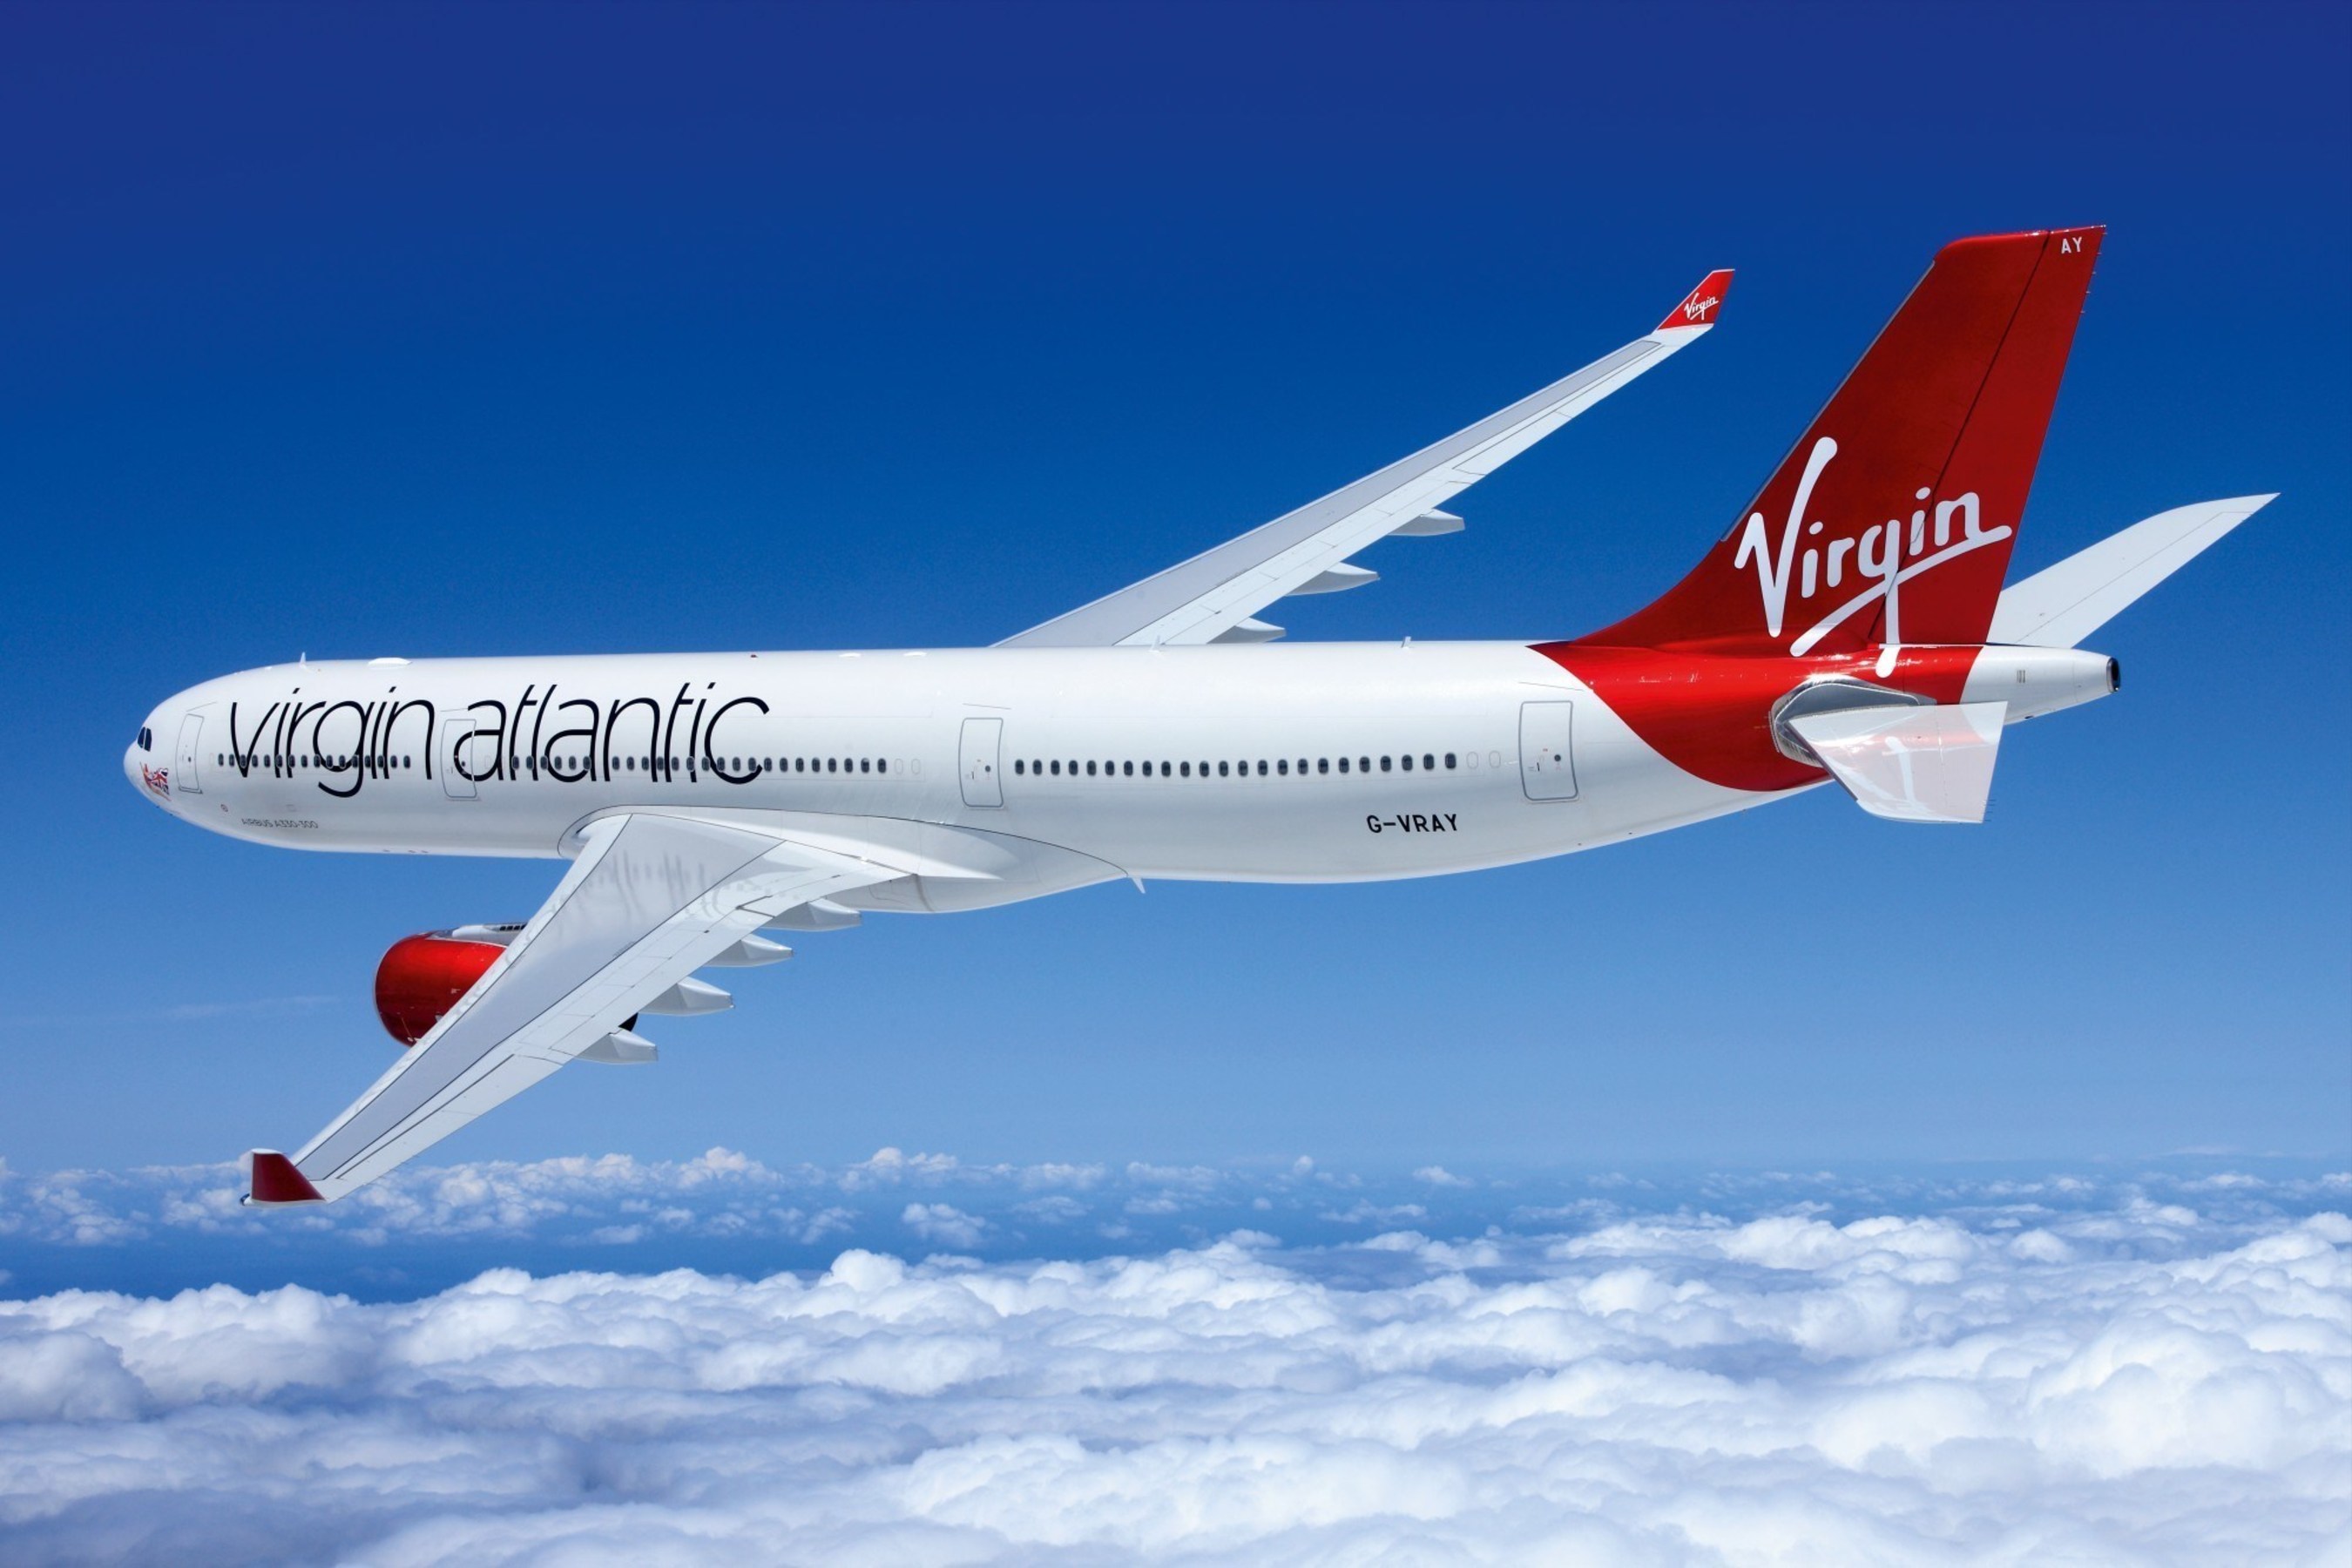 Virgin Atlantic A330 aircraft. Photo credit: Virgin Atlantic